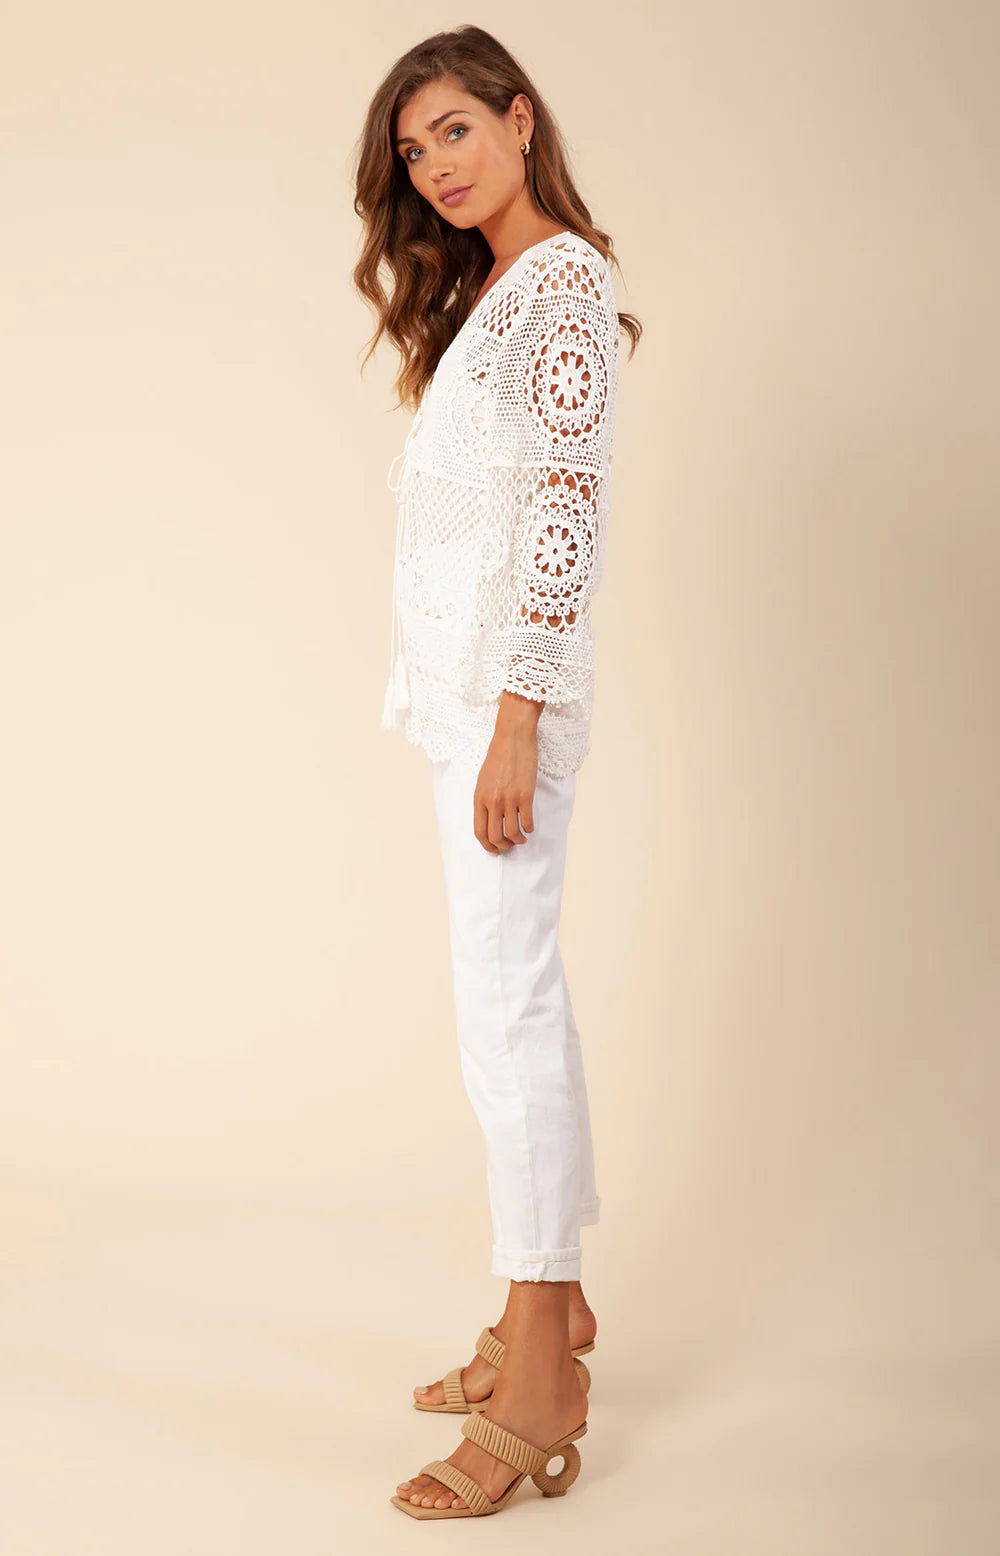 Alexane Crochet Top White